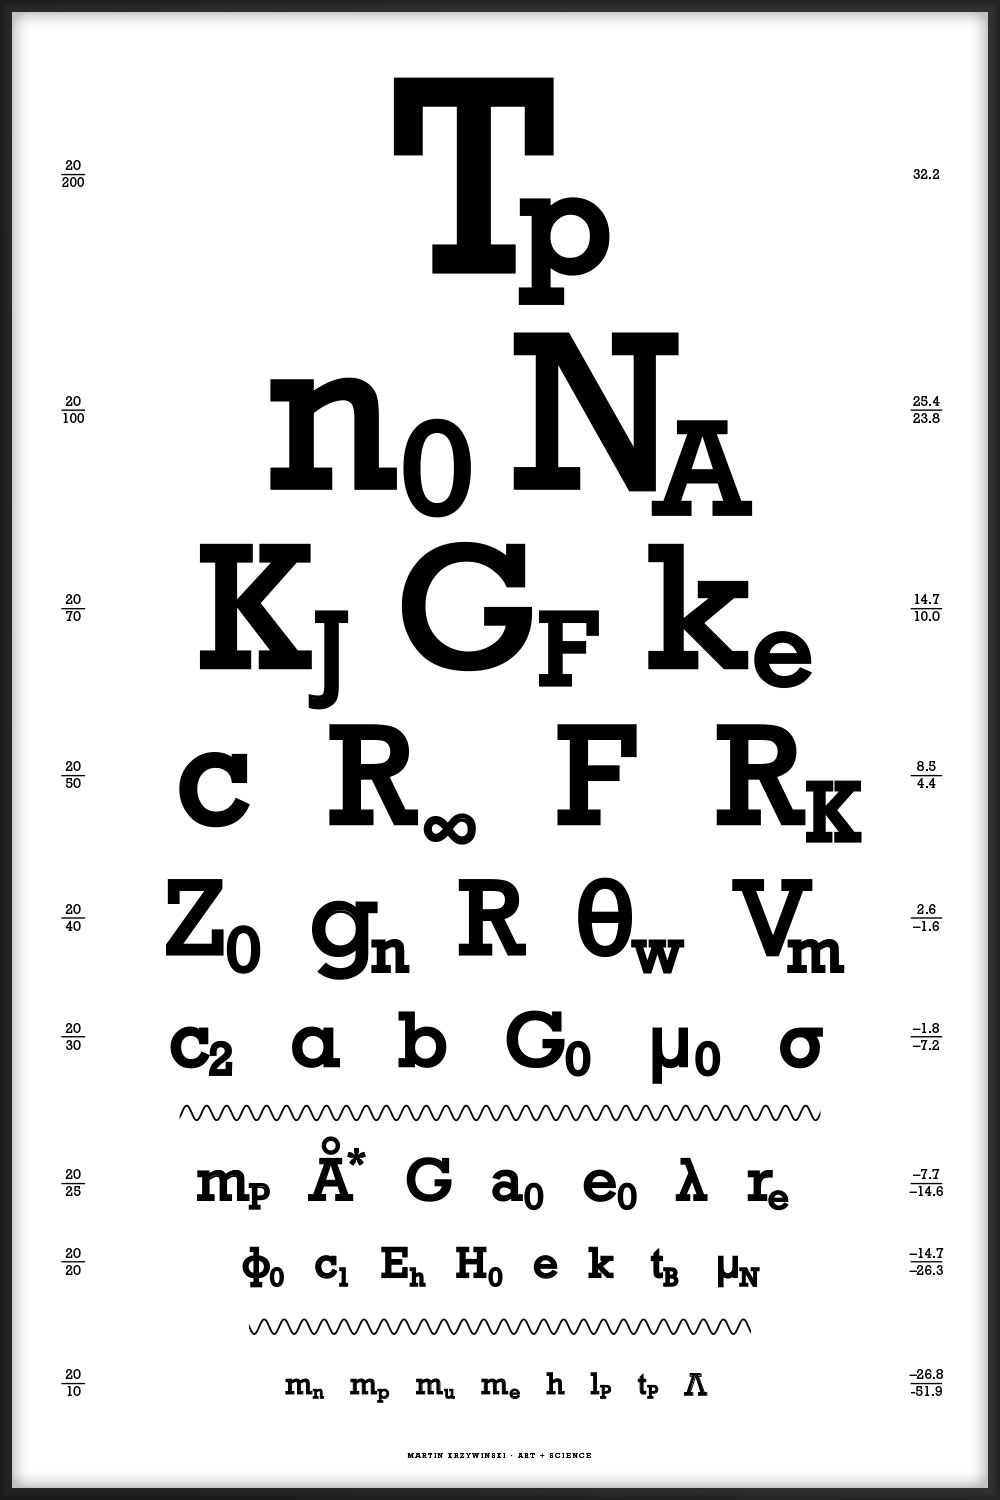 Snellen eye chart — physical constants by Martin Krzywinski